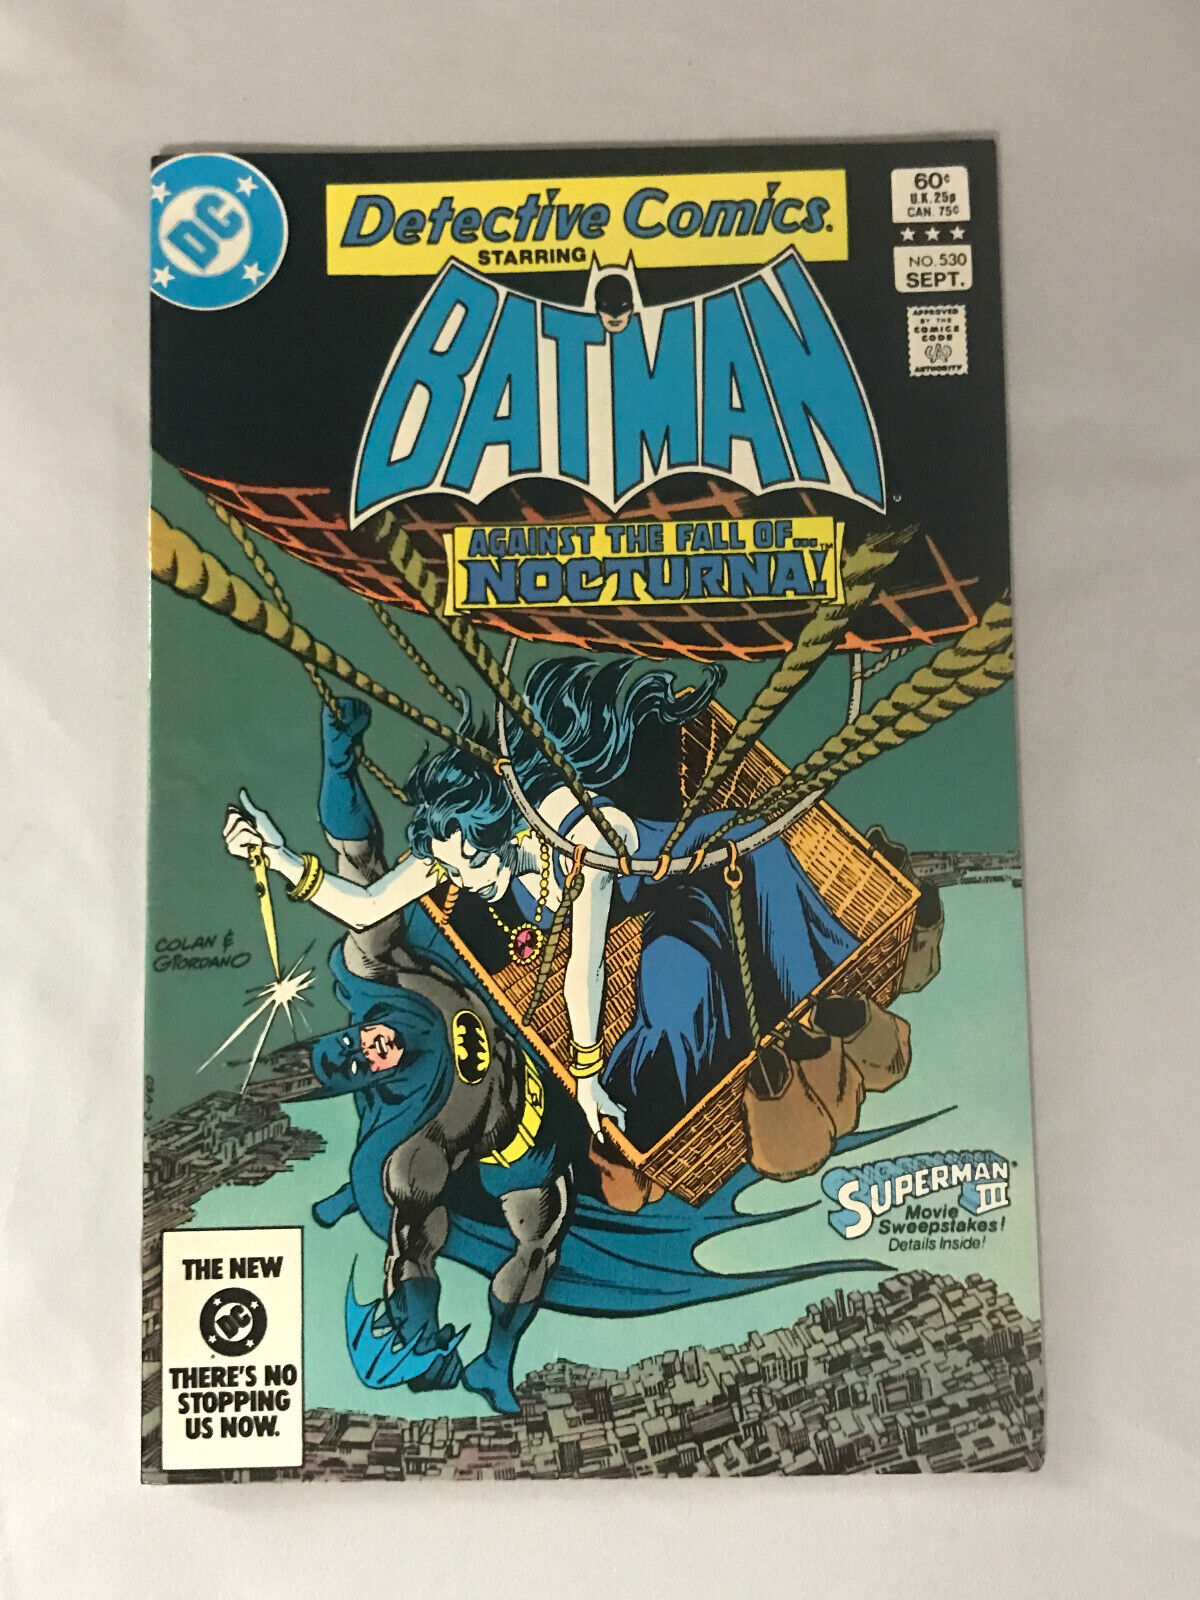 DETECTIVE COMICS - BATMAN #530 NM COPPER AGE DC COMICS 1983